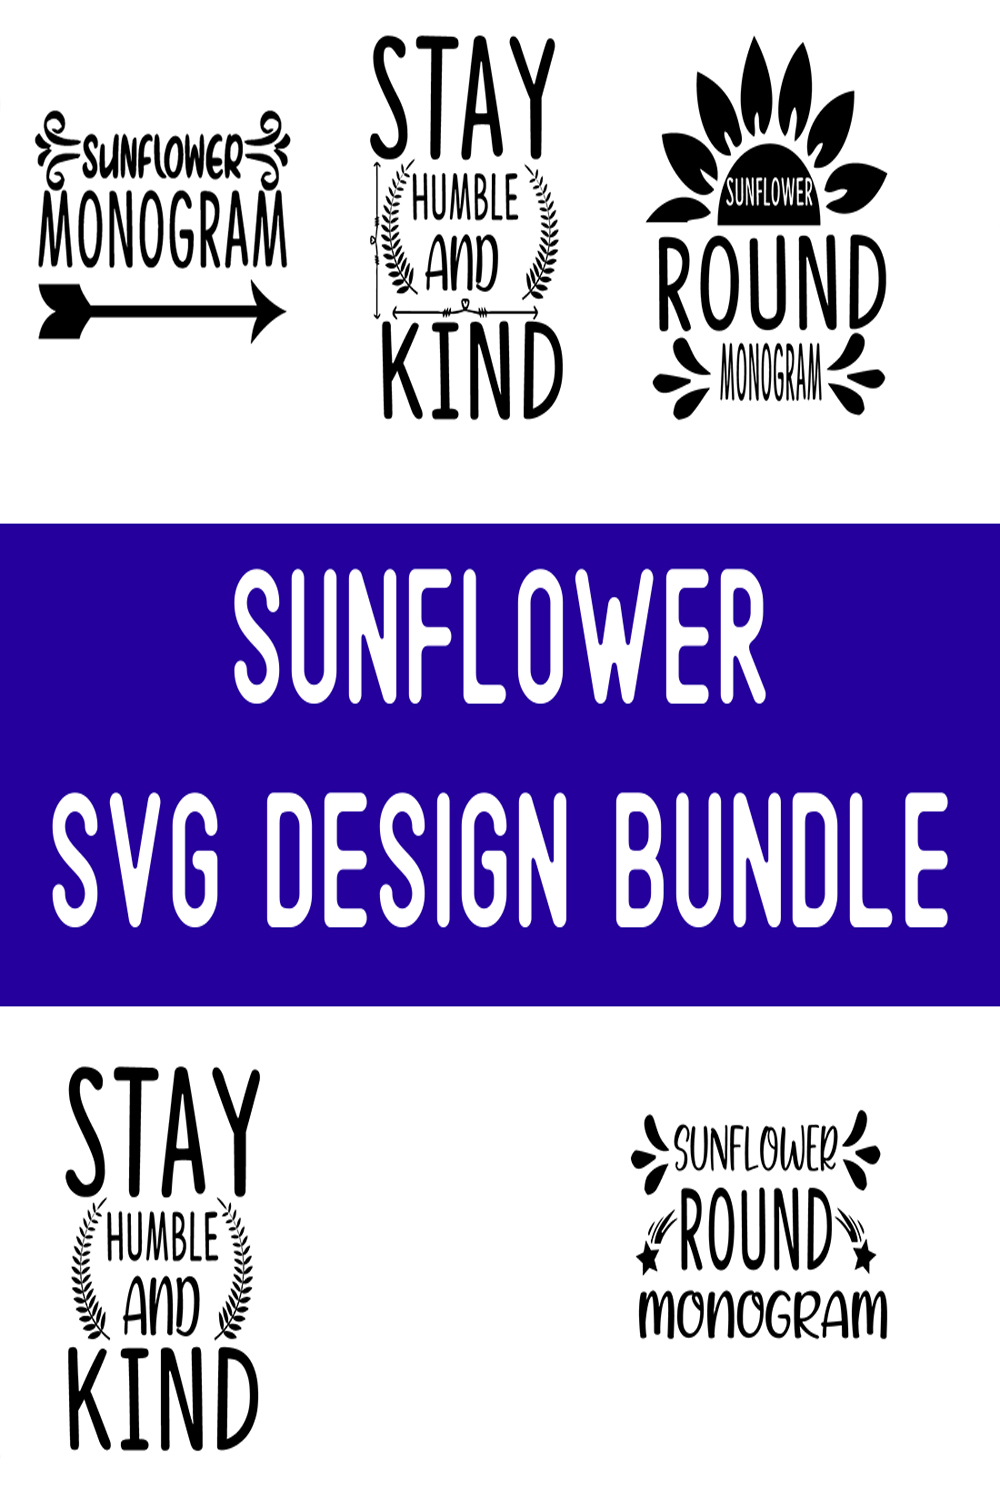 sunflower SVG Design Bundle pinterest preview image.